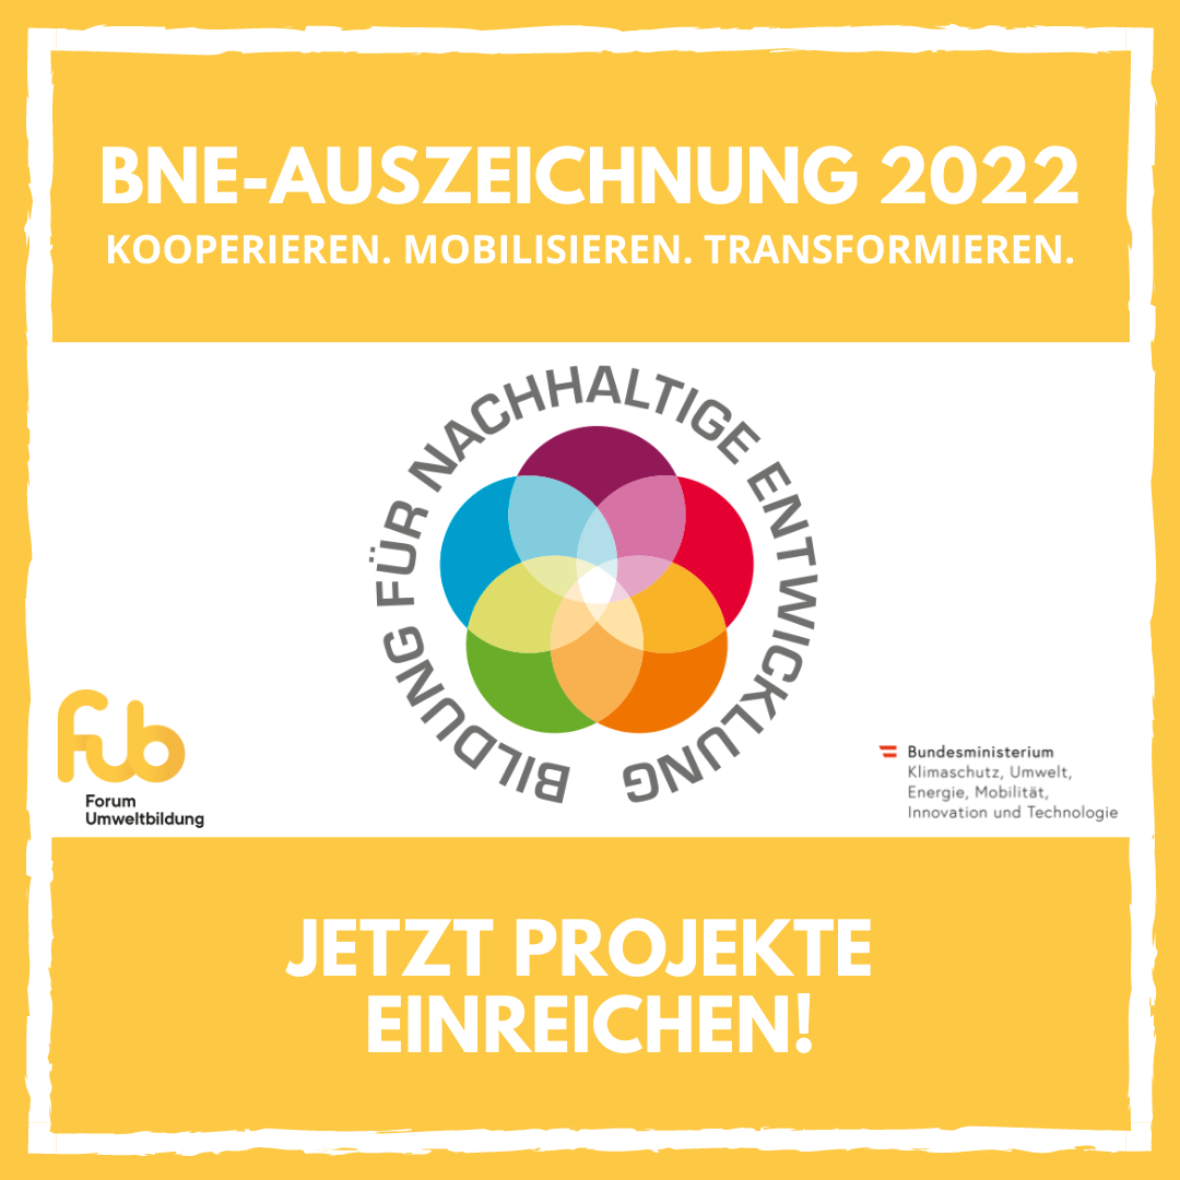 BNE-Auszeichnung 2022